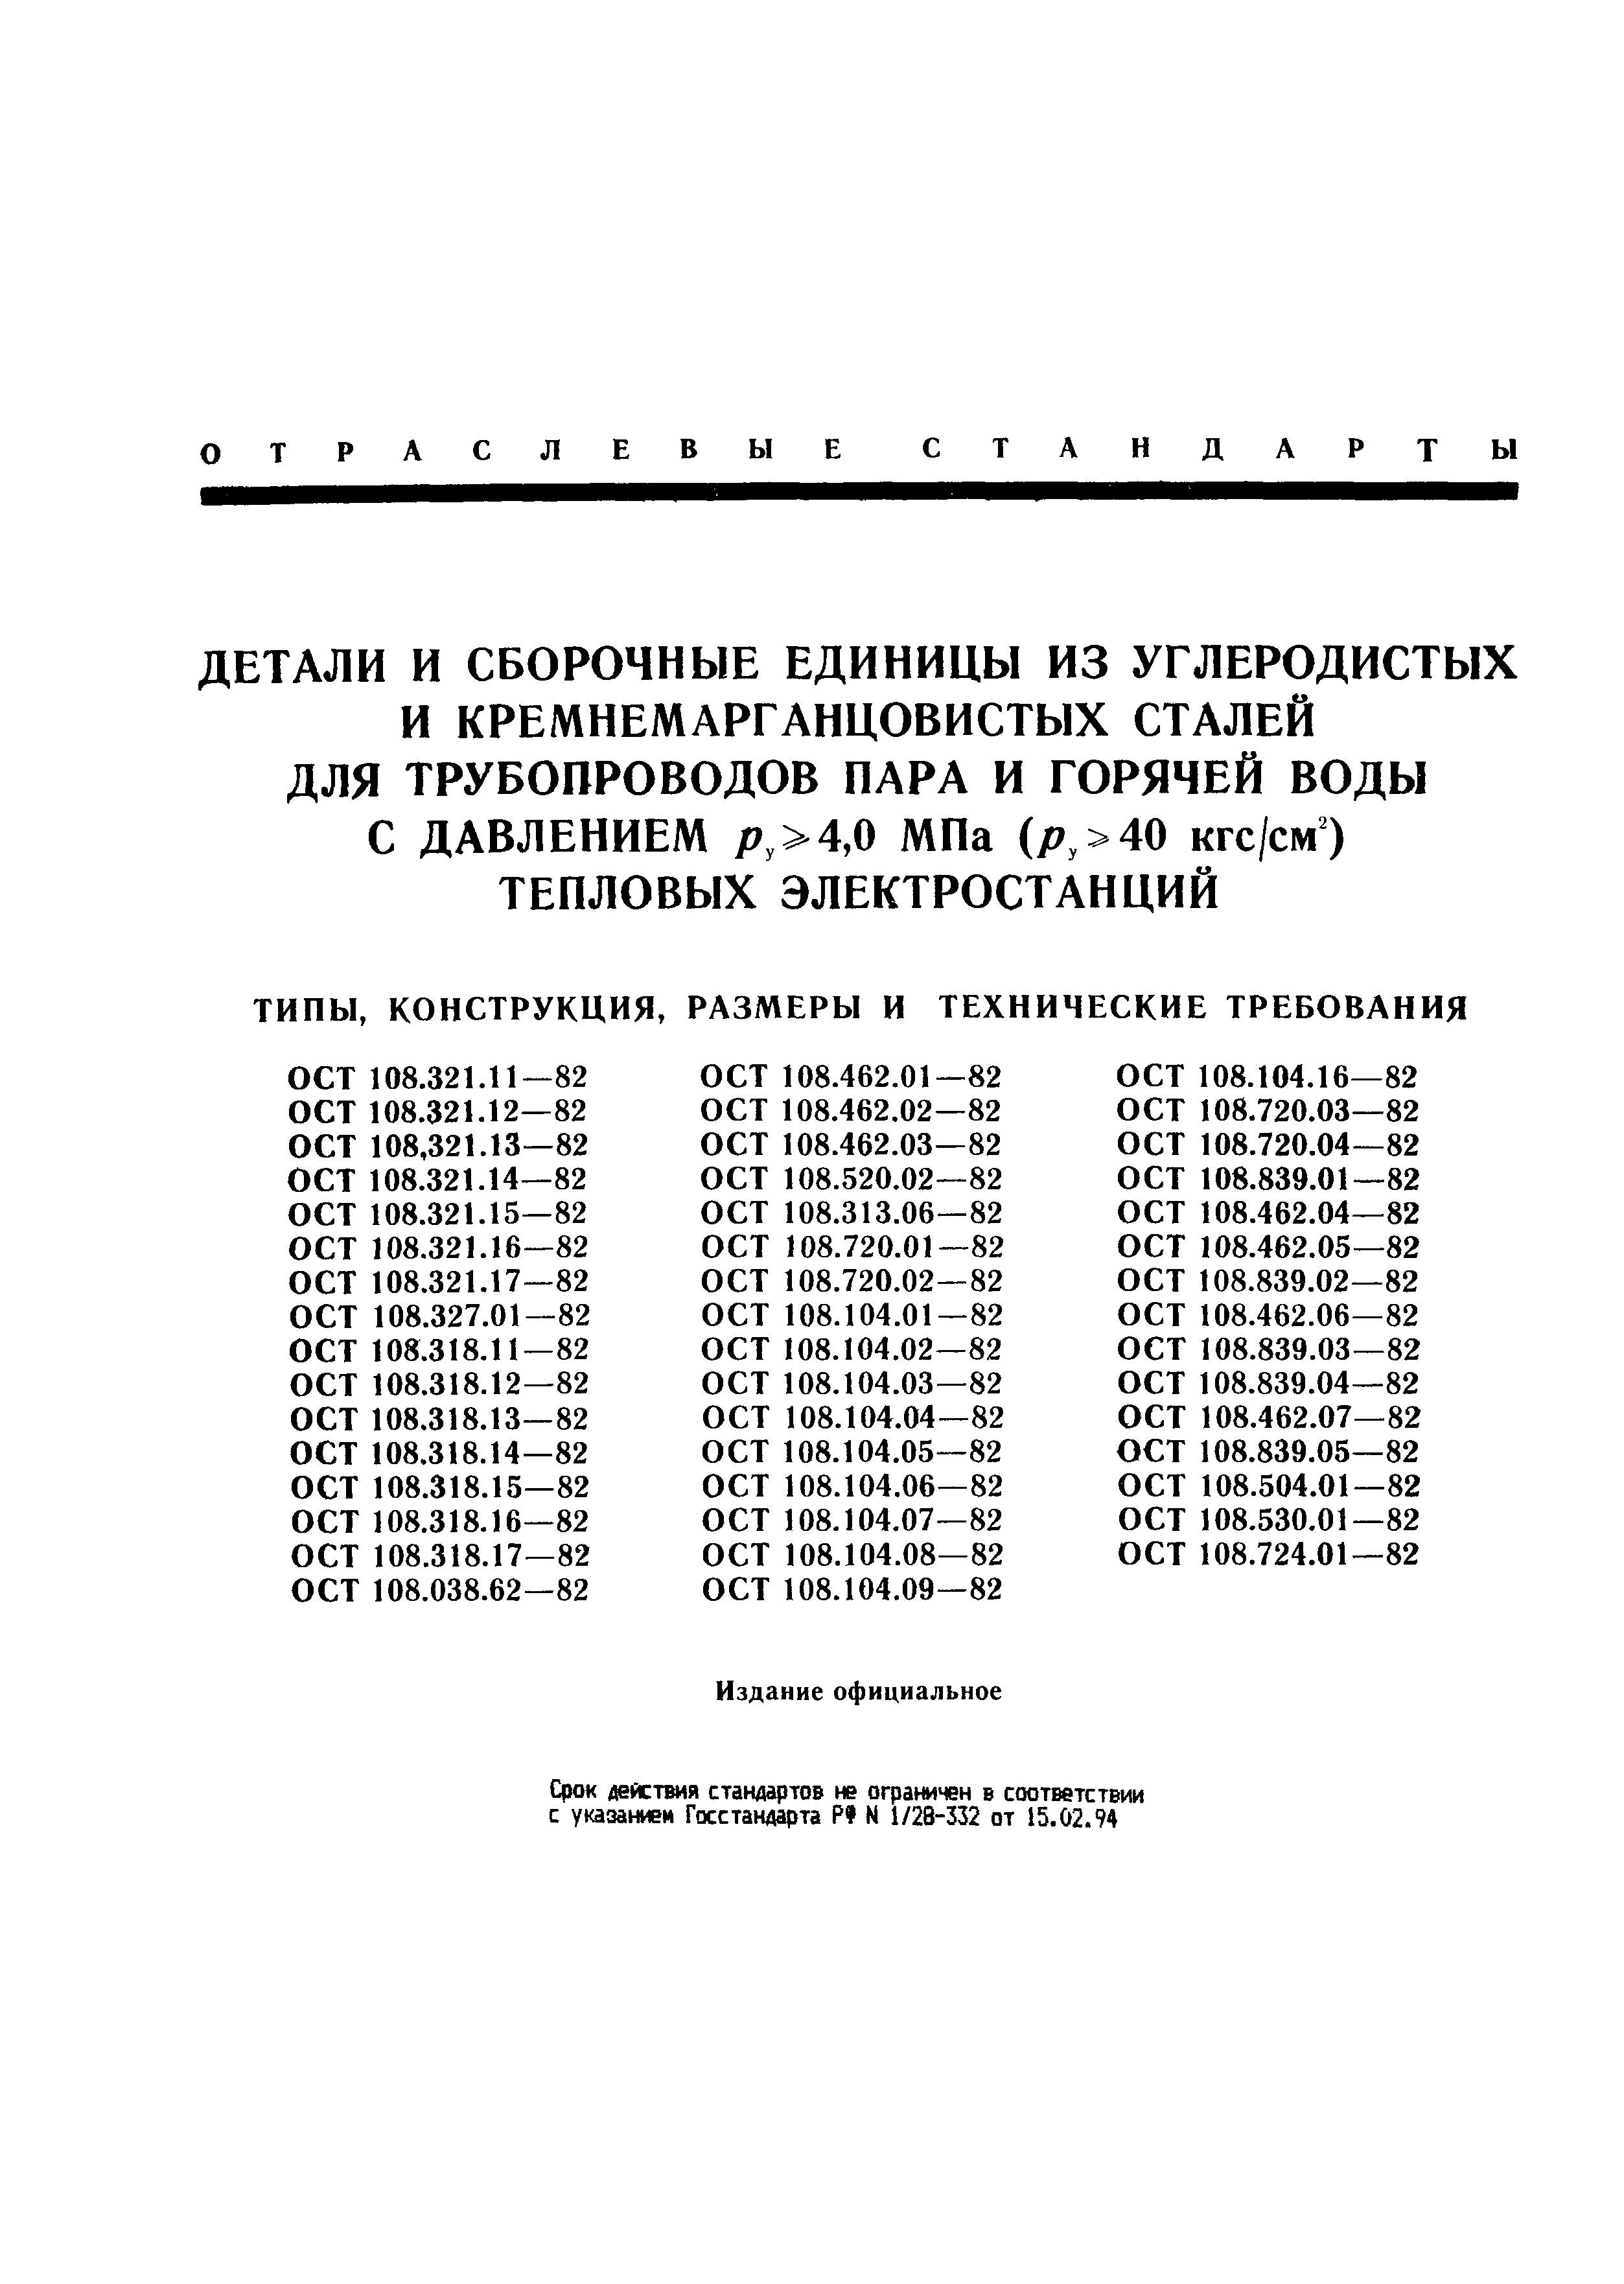 ОСТ 108.462.03-82